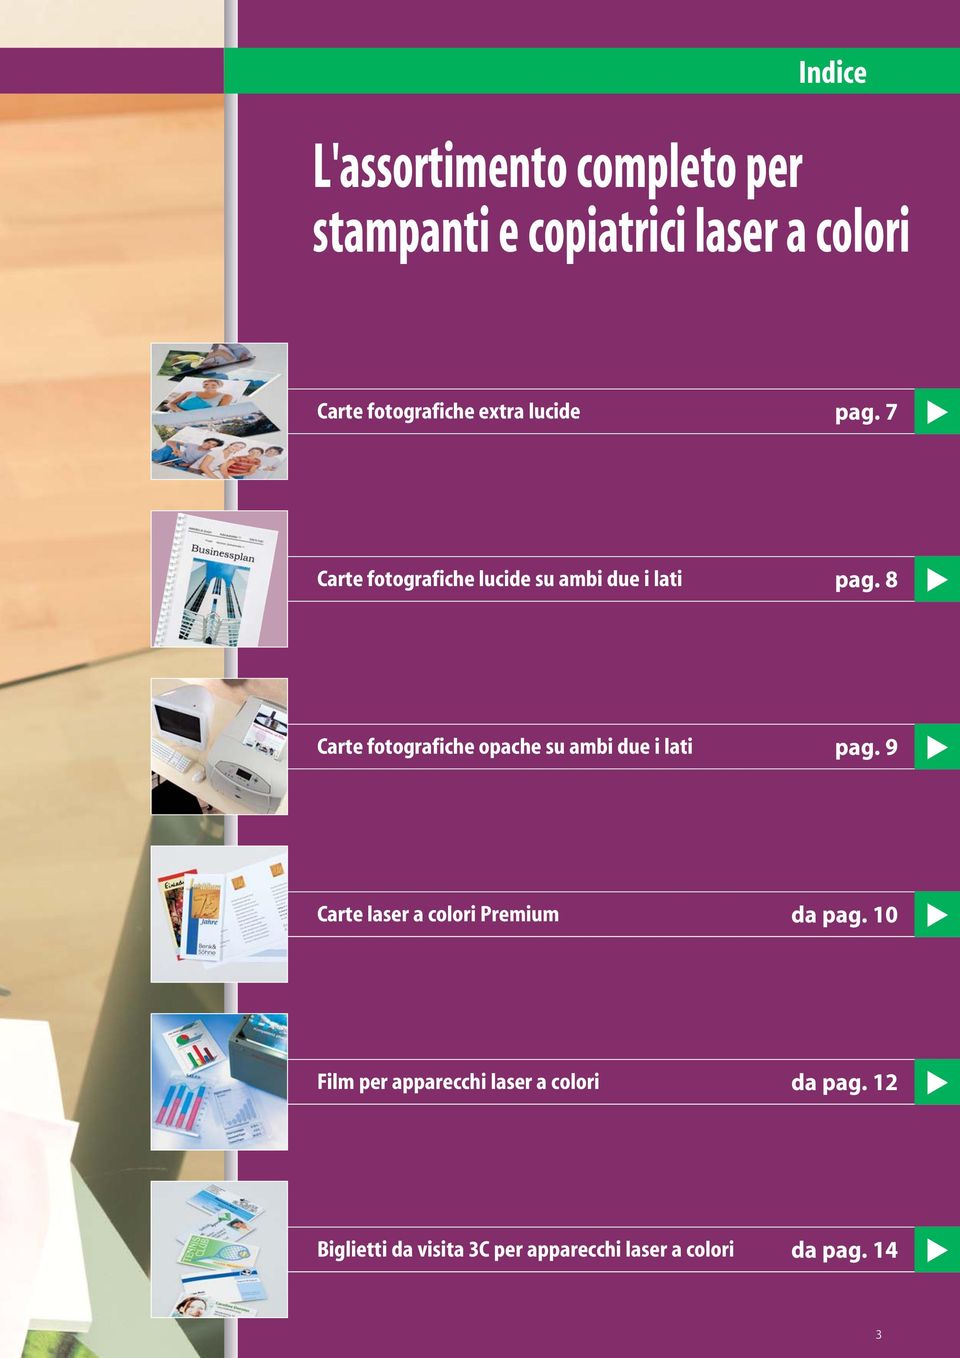 8 Carte fotografiche opache su ambi due i lati pag. 9 Carte laser a colori Premium da pag.